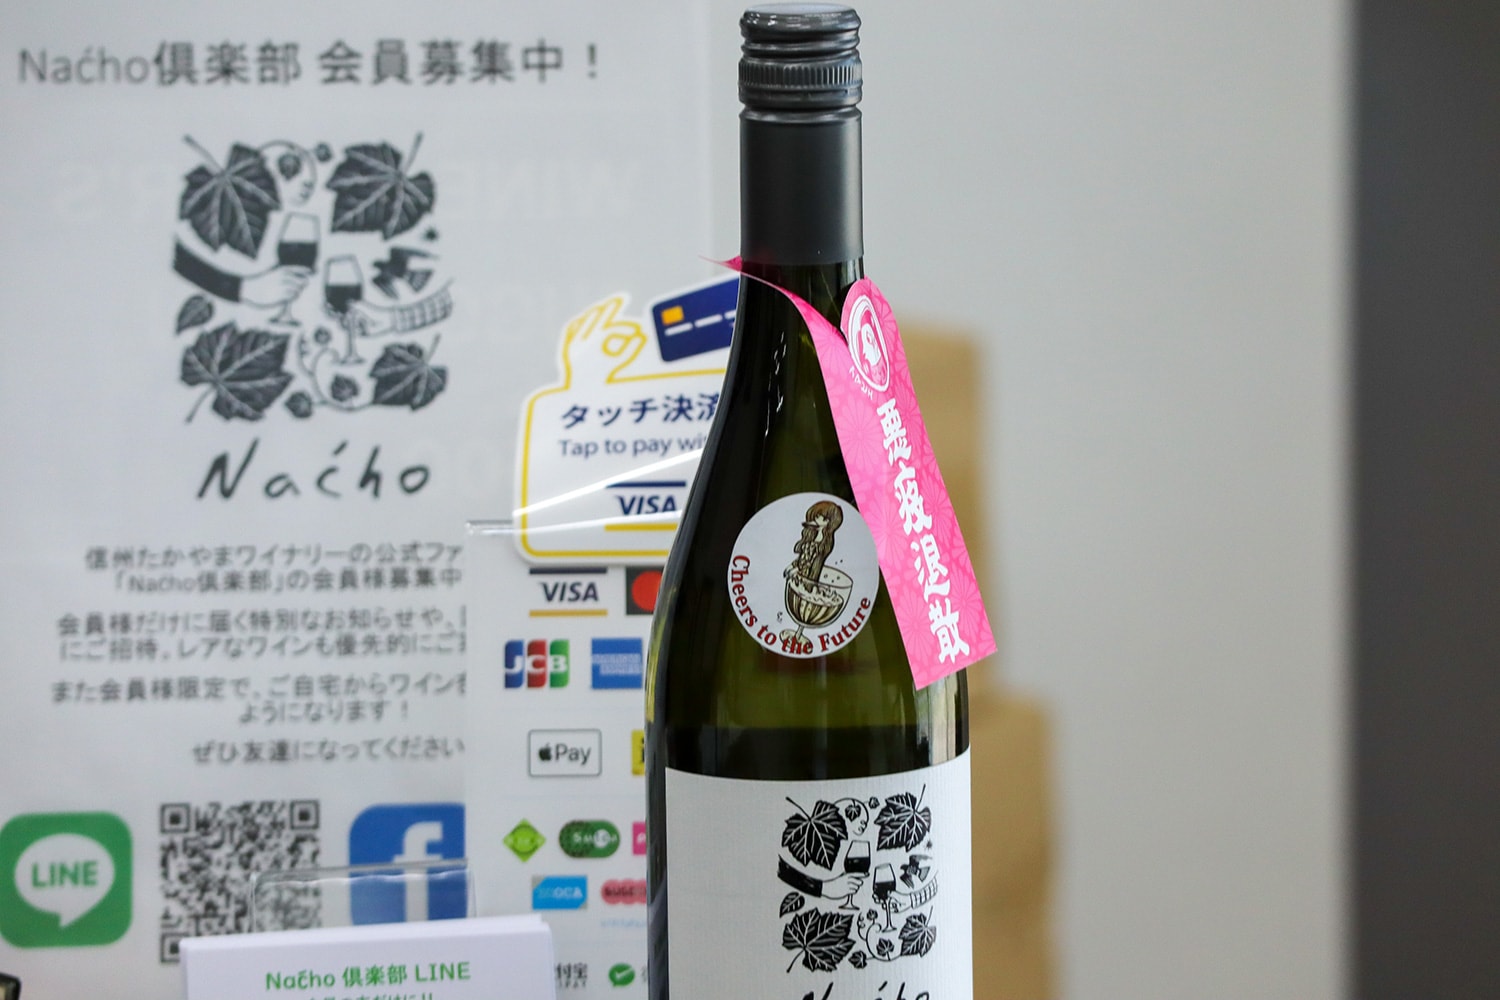 村内限定販売の「Naćho（ナッチョ）」。長野県北部の方言で「どう？」という意味を持つ言葉。地域の宝になれば、とフレッシュで飲み口の良いワインに仕上げられている。